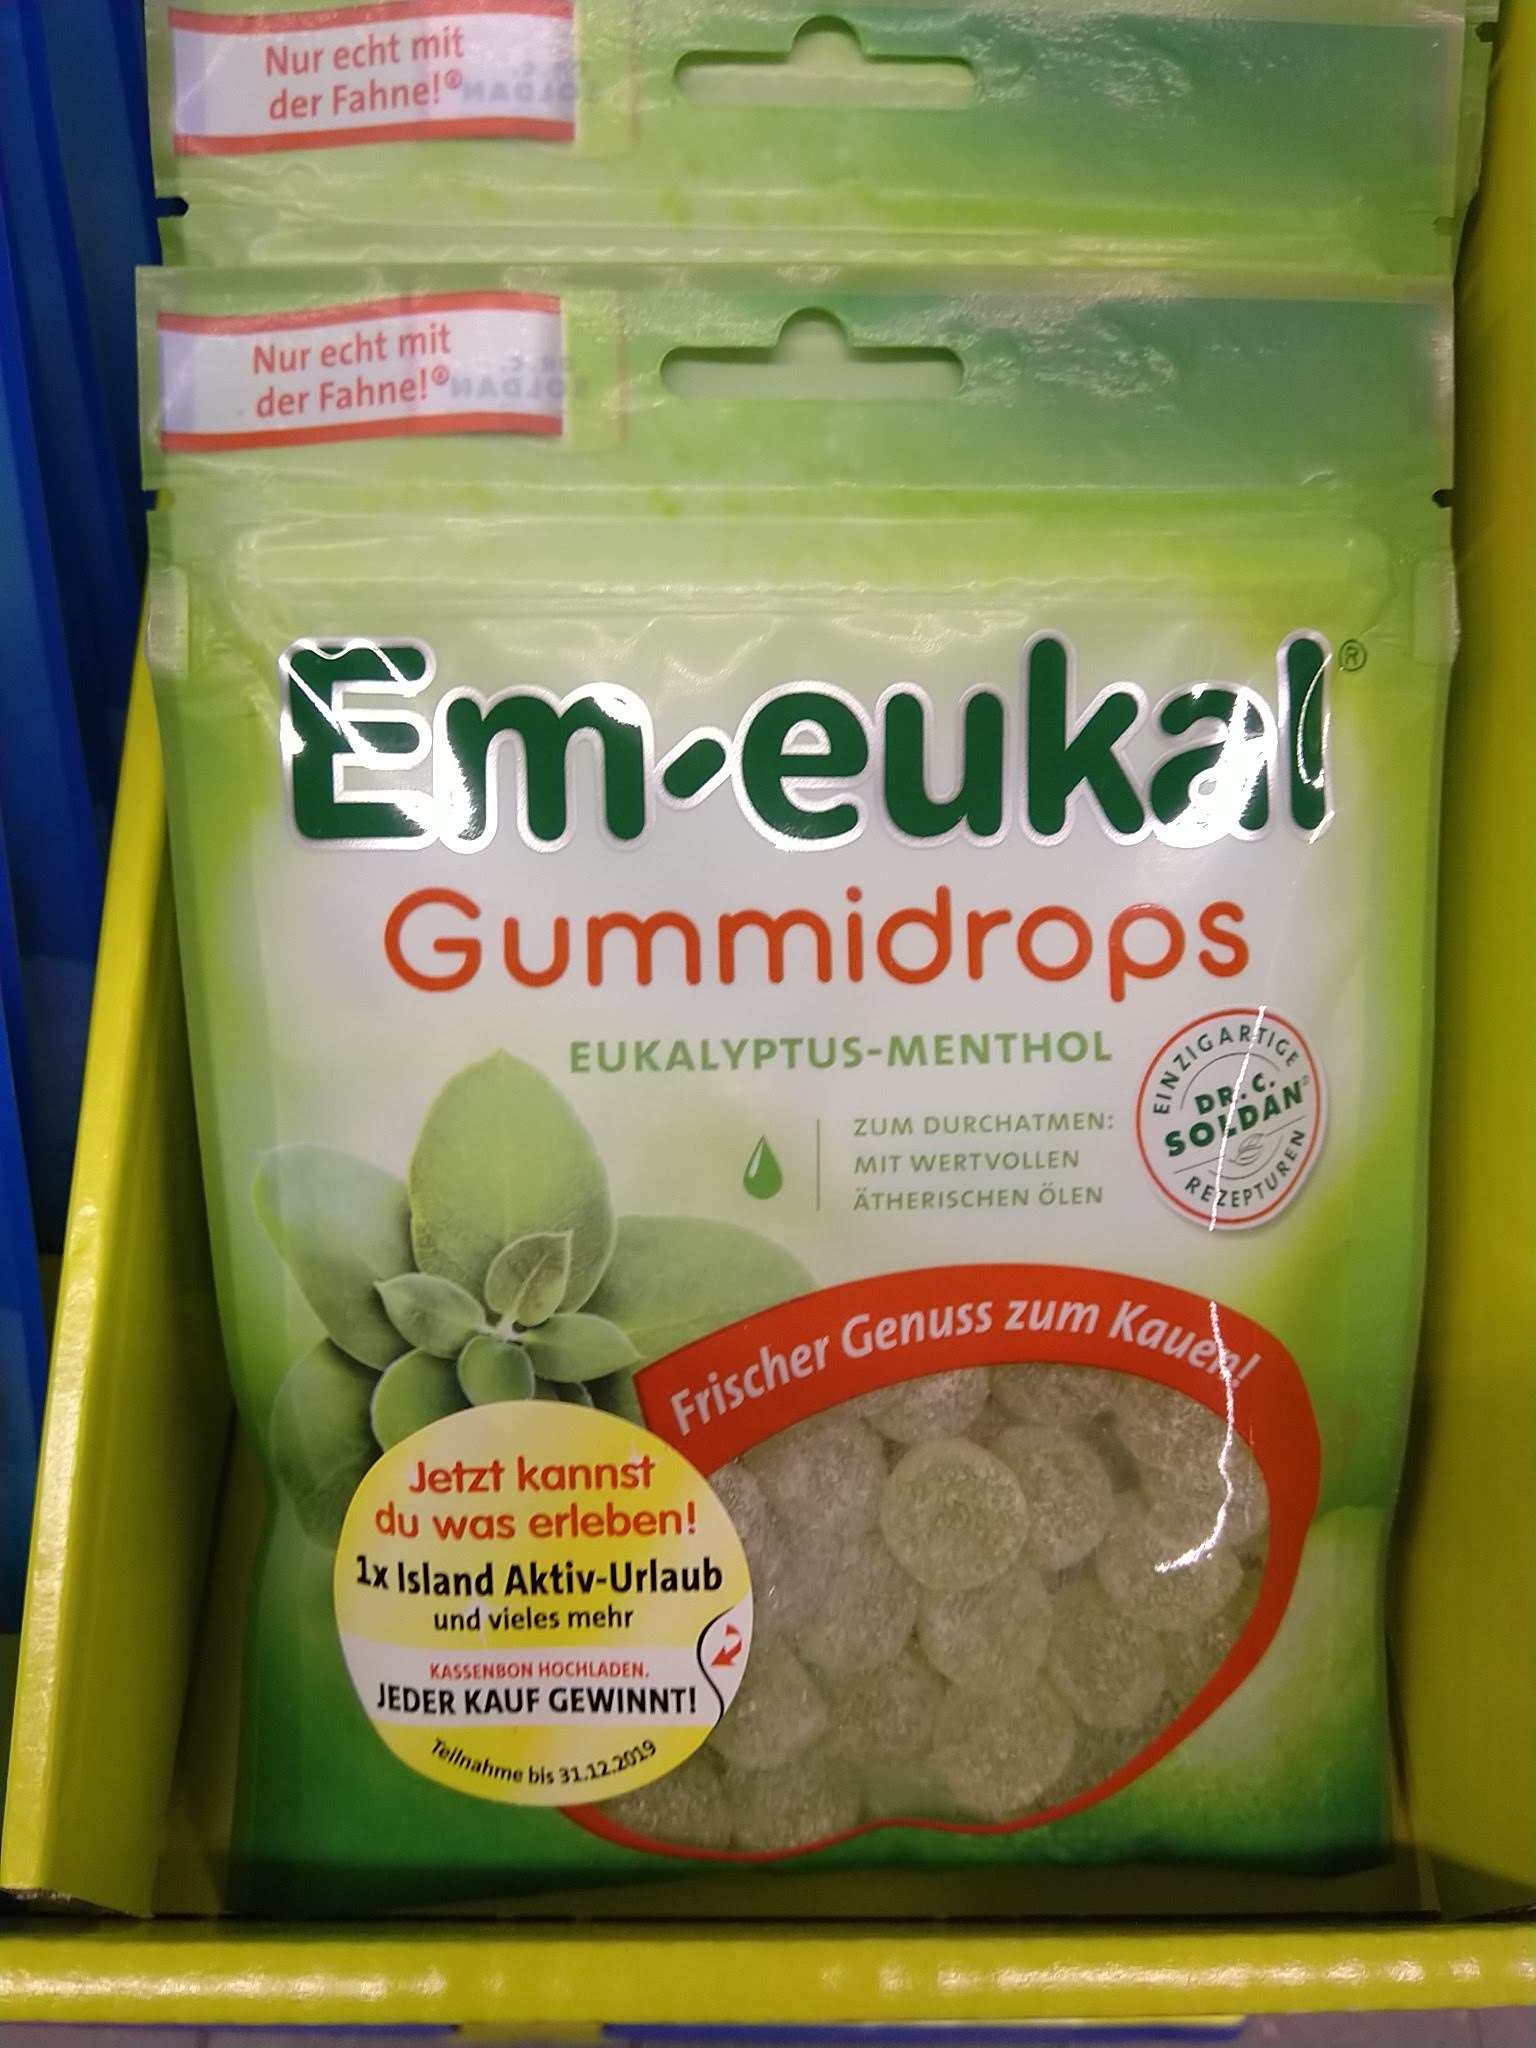 Em-eukal Gummidrops